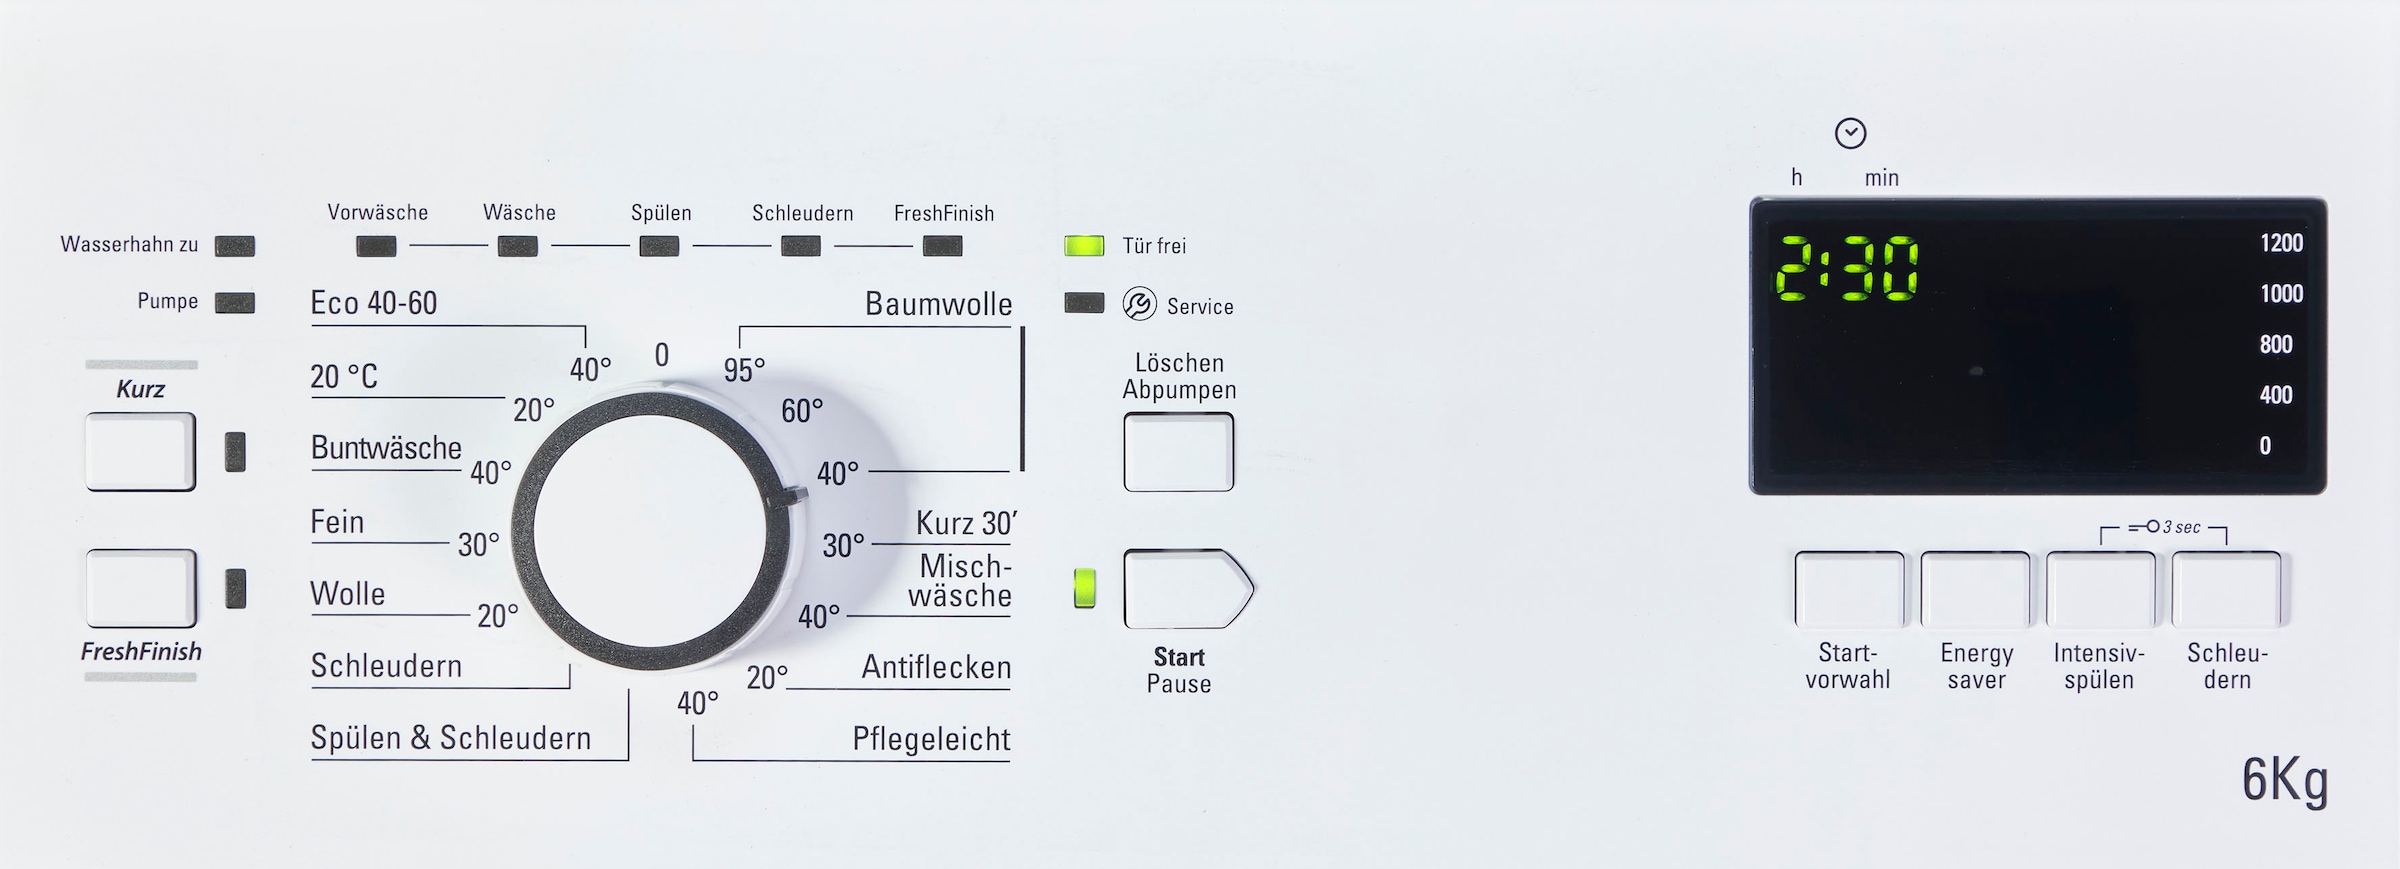 BAUKNECHT Waschmaschine Toplader »WAT Smart U/min Eco 1200 Eco 12C, Smart 12C«, 6 kg, kaufen WAT online